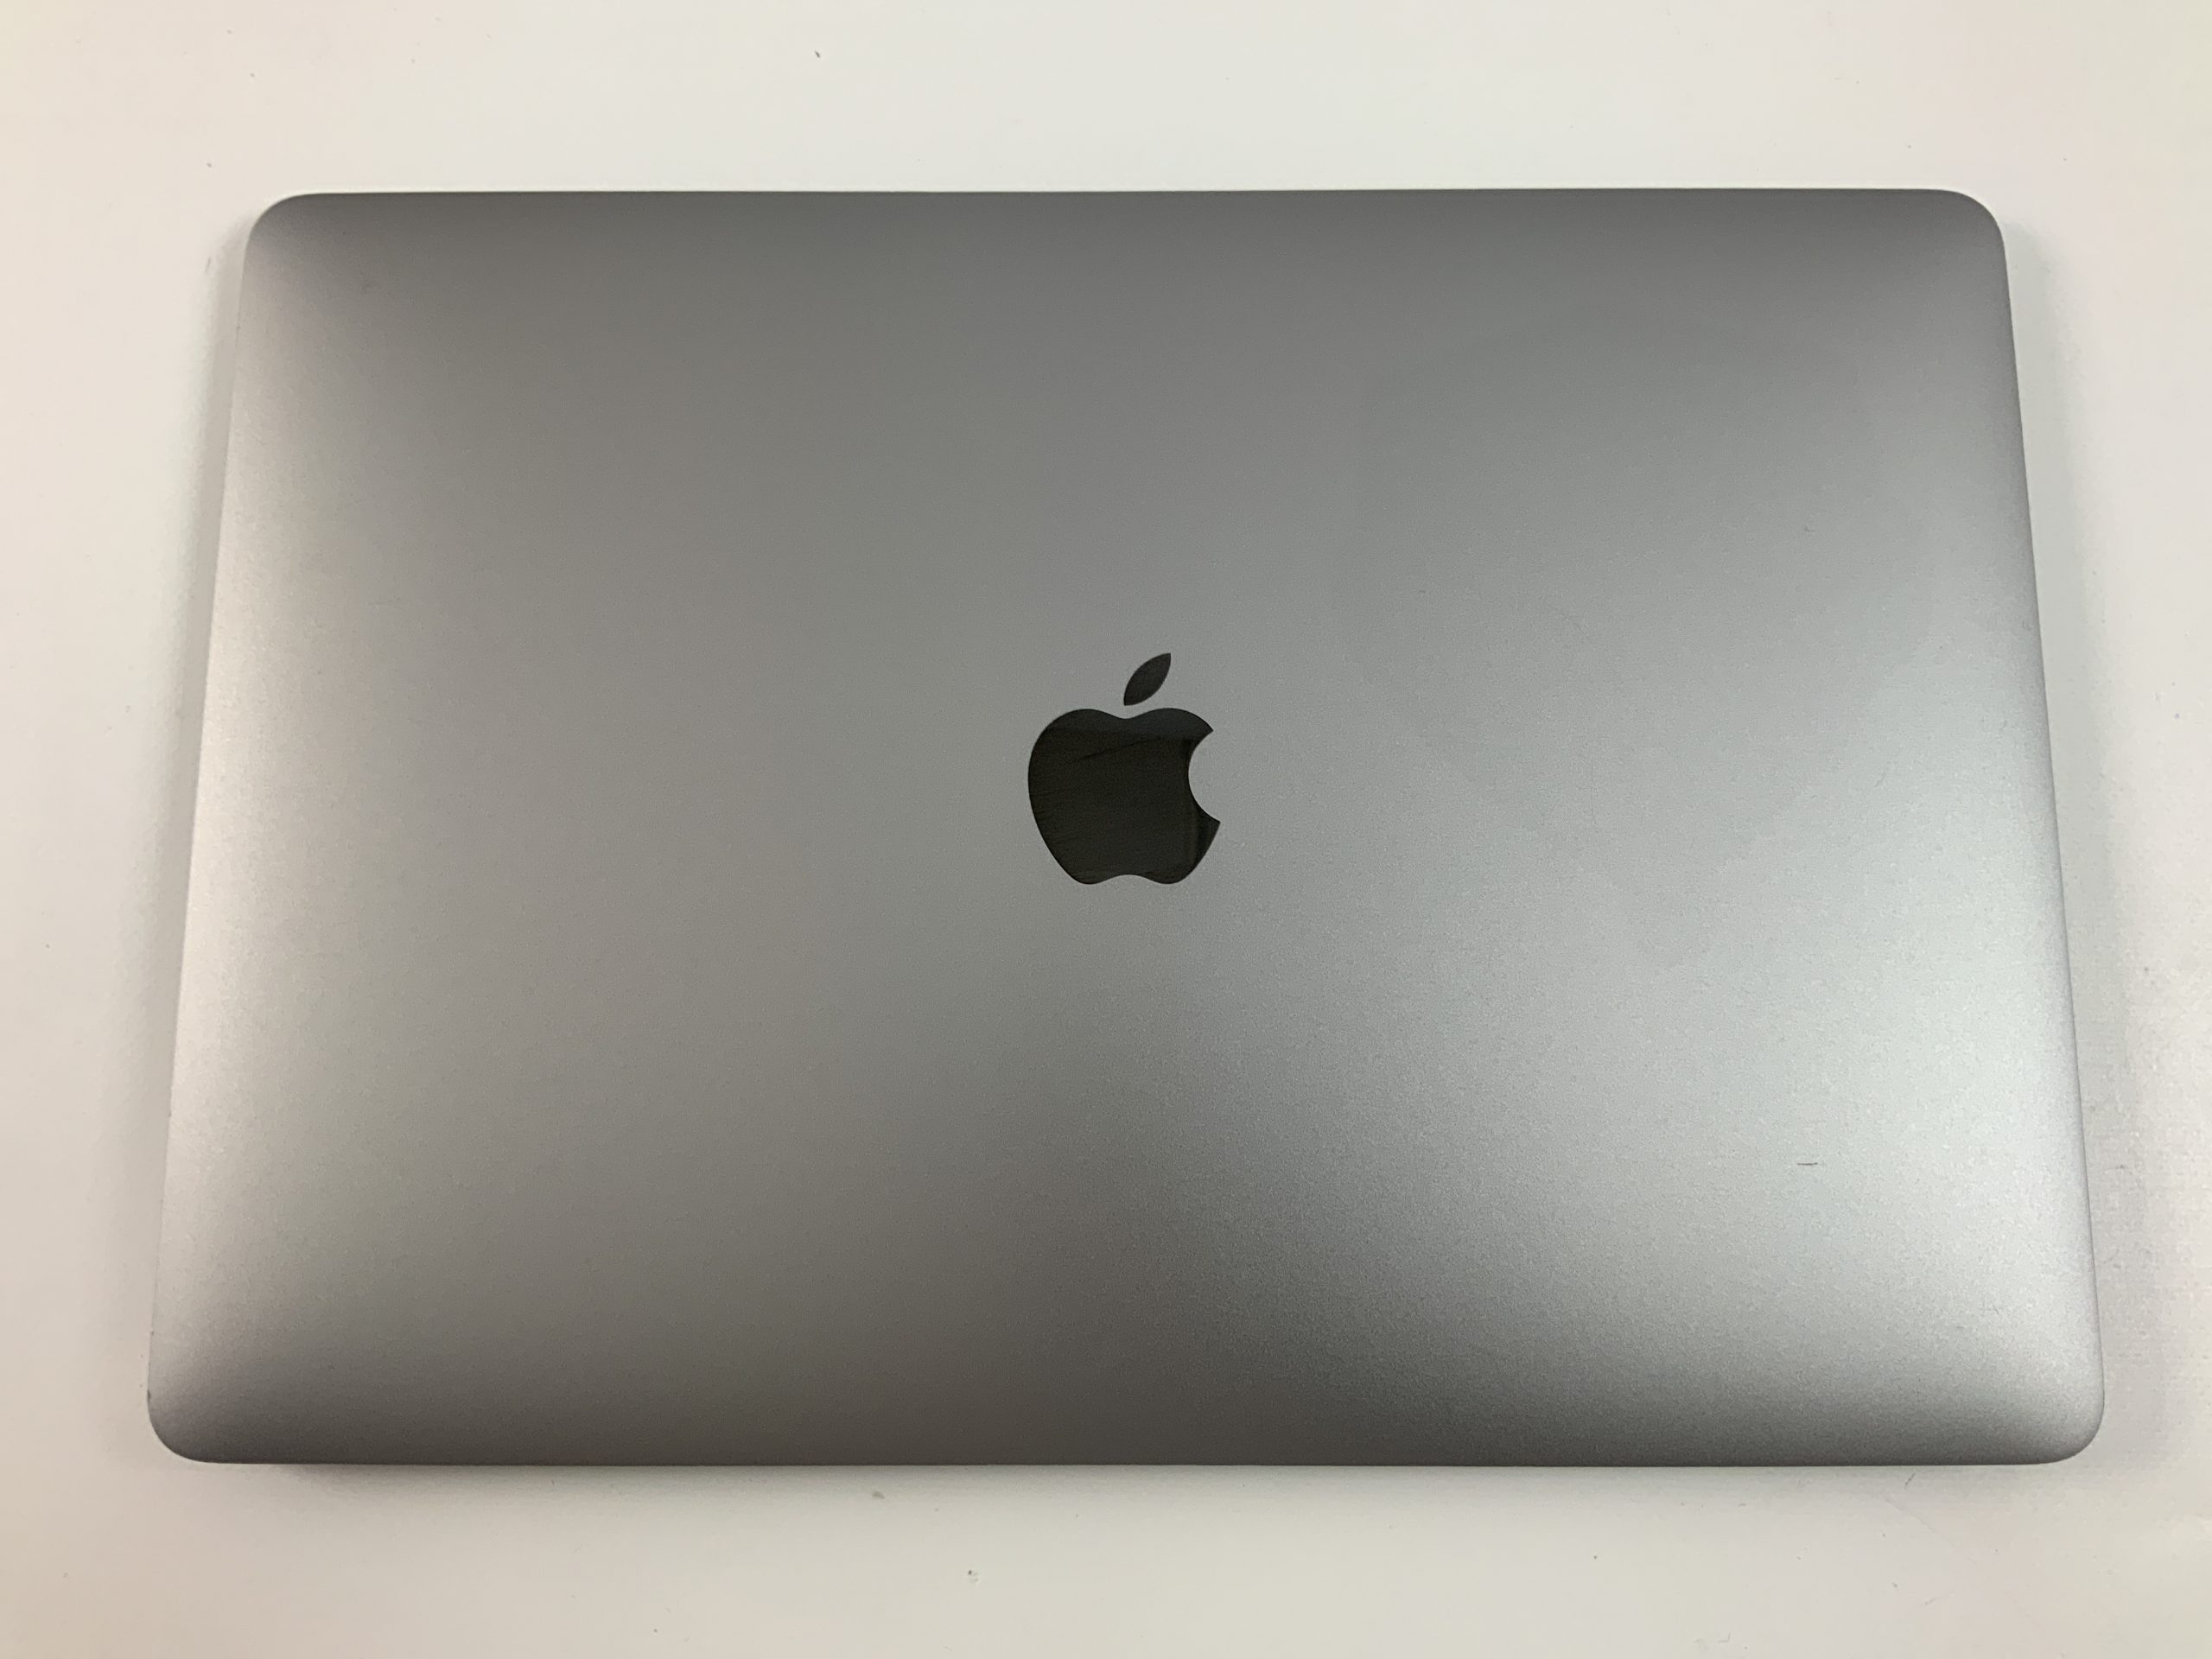 MacBook Air 13" Mid 2019 (Intel Core i5 1.6 GHz 16 GB RAM 128 GB SSD), Space Gray, Intel Core i5 1.6 GHz, 16 GB RAM, 128 GB SSD, image 4